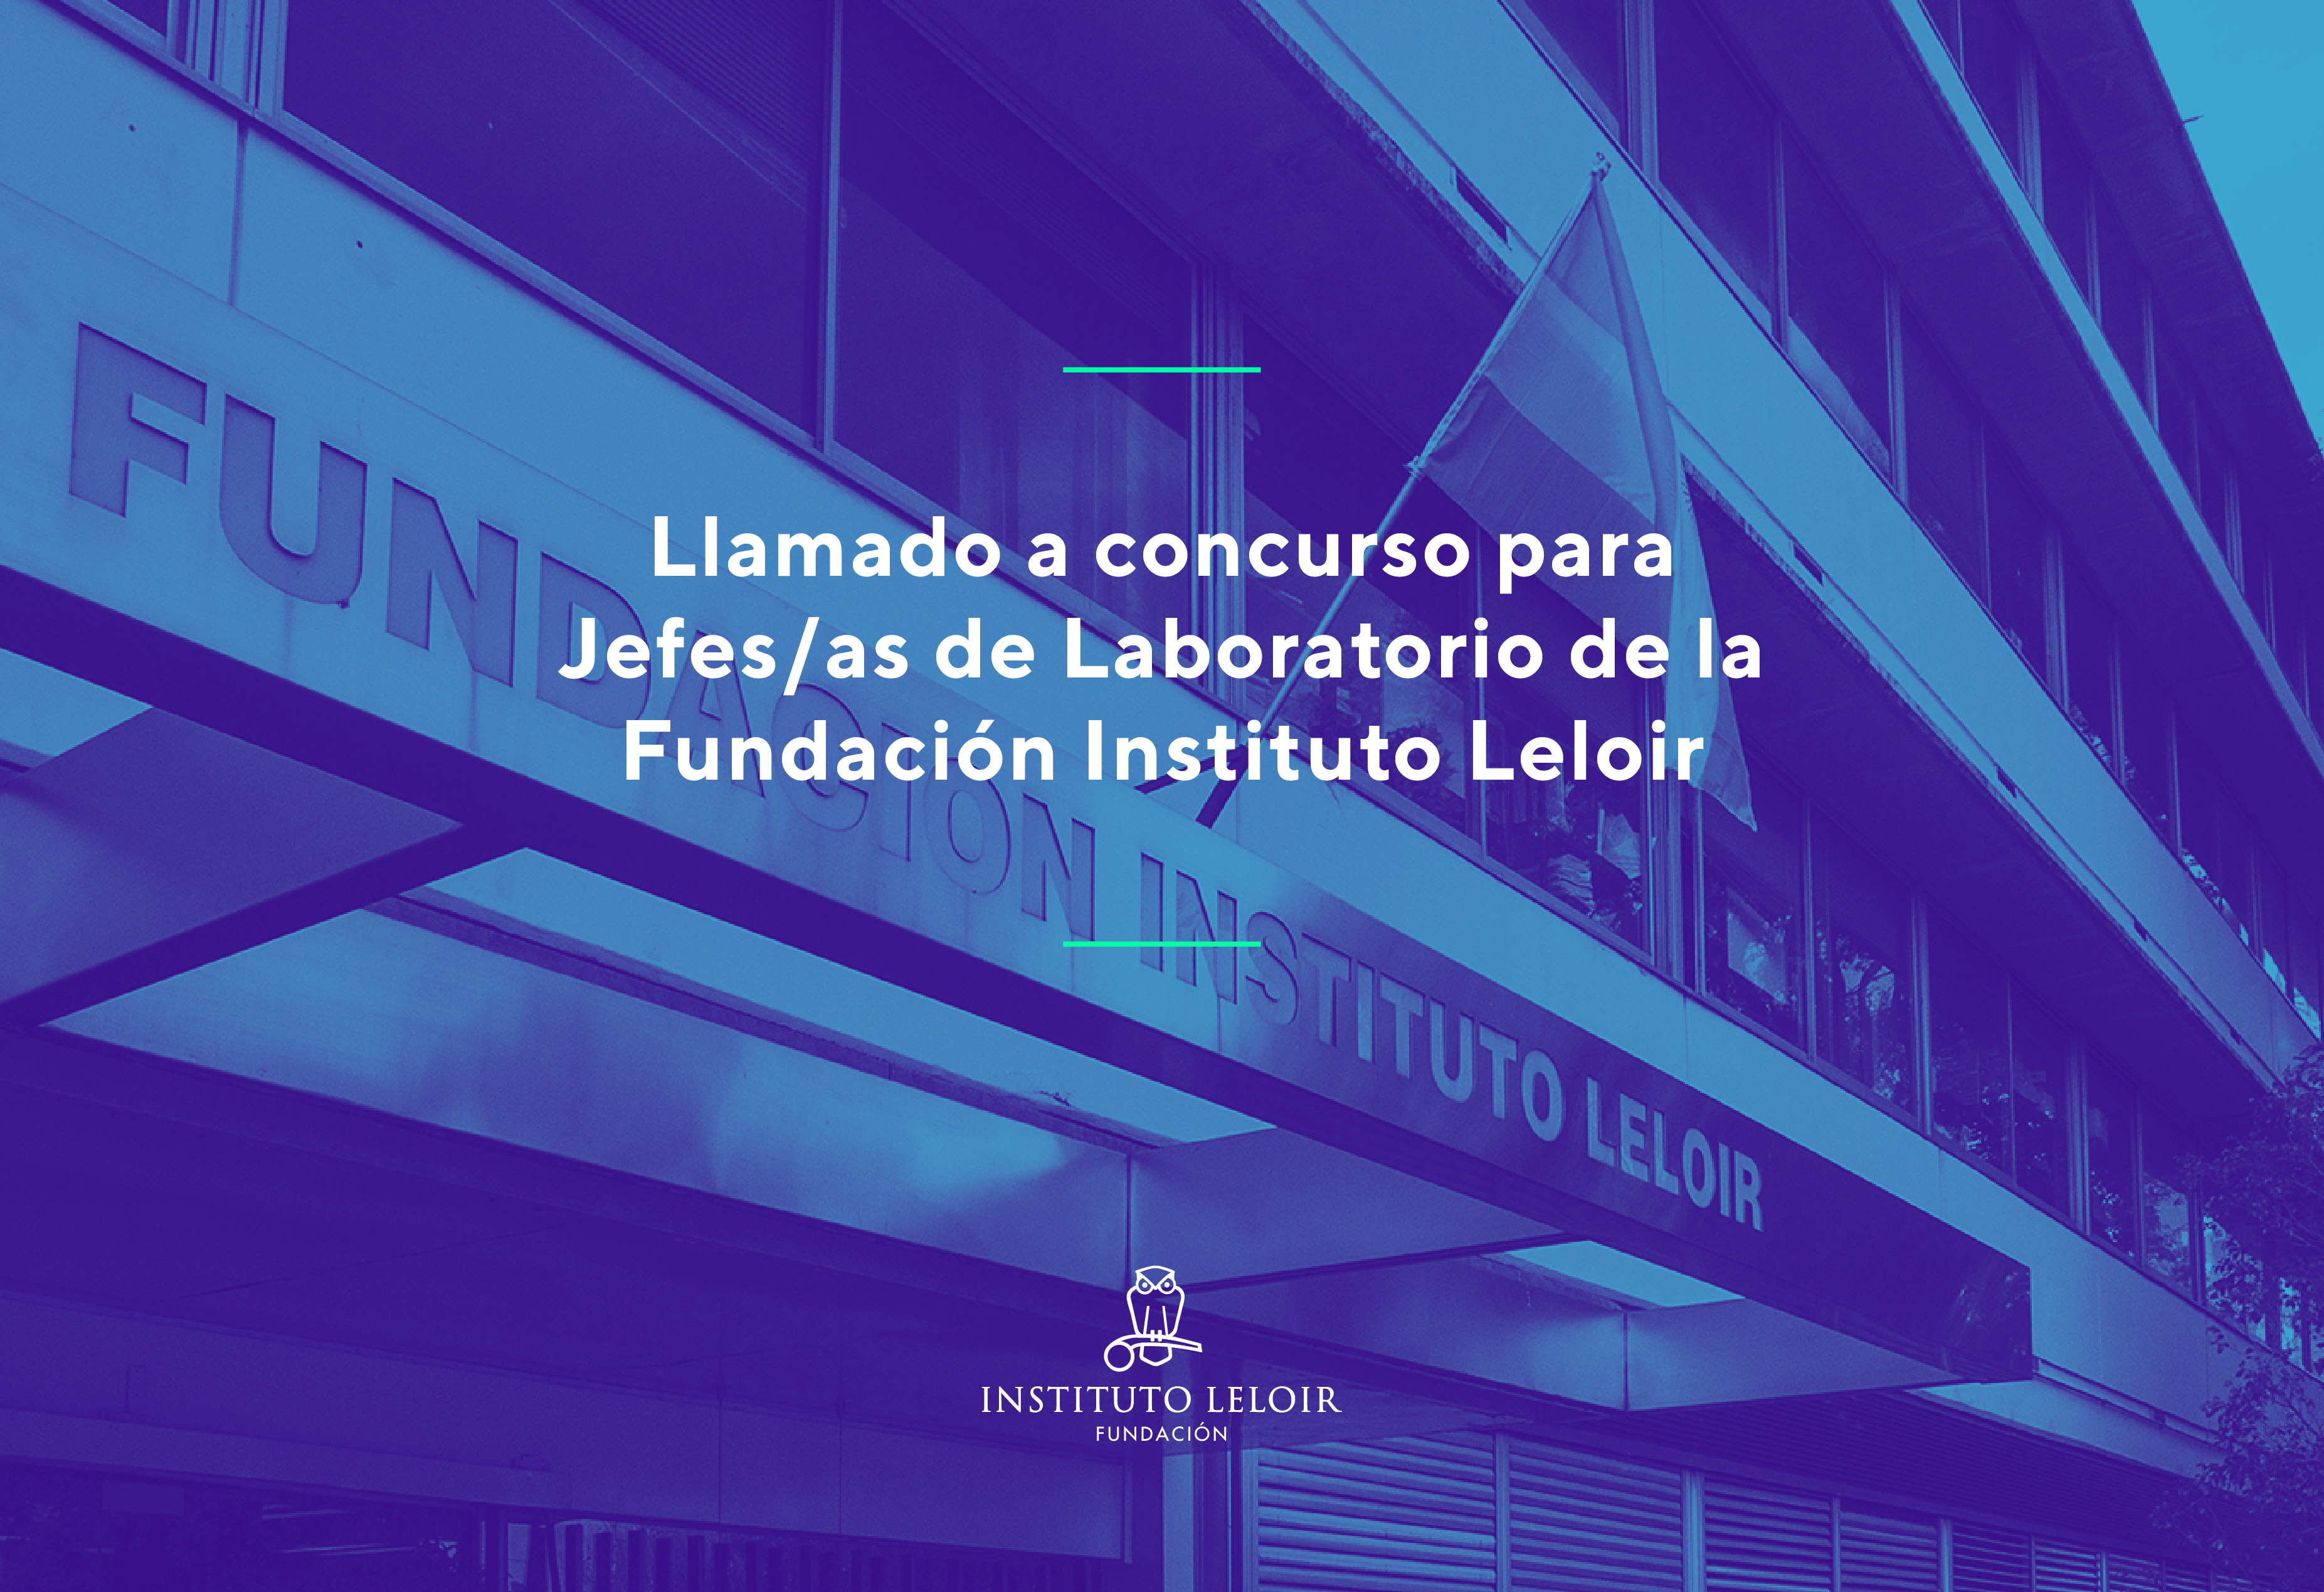 Llamado a concurso para Jefes/as de Laboratorio de la Fundación Instituto Leloir